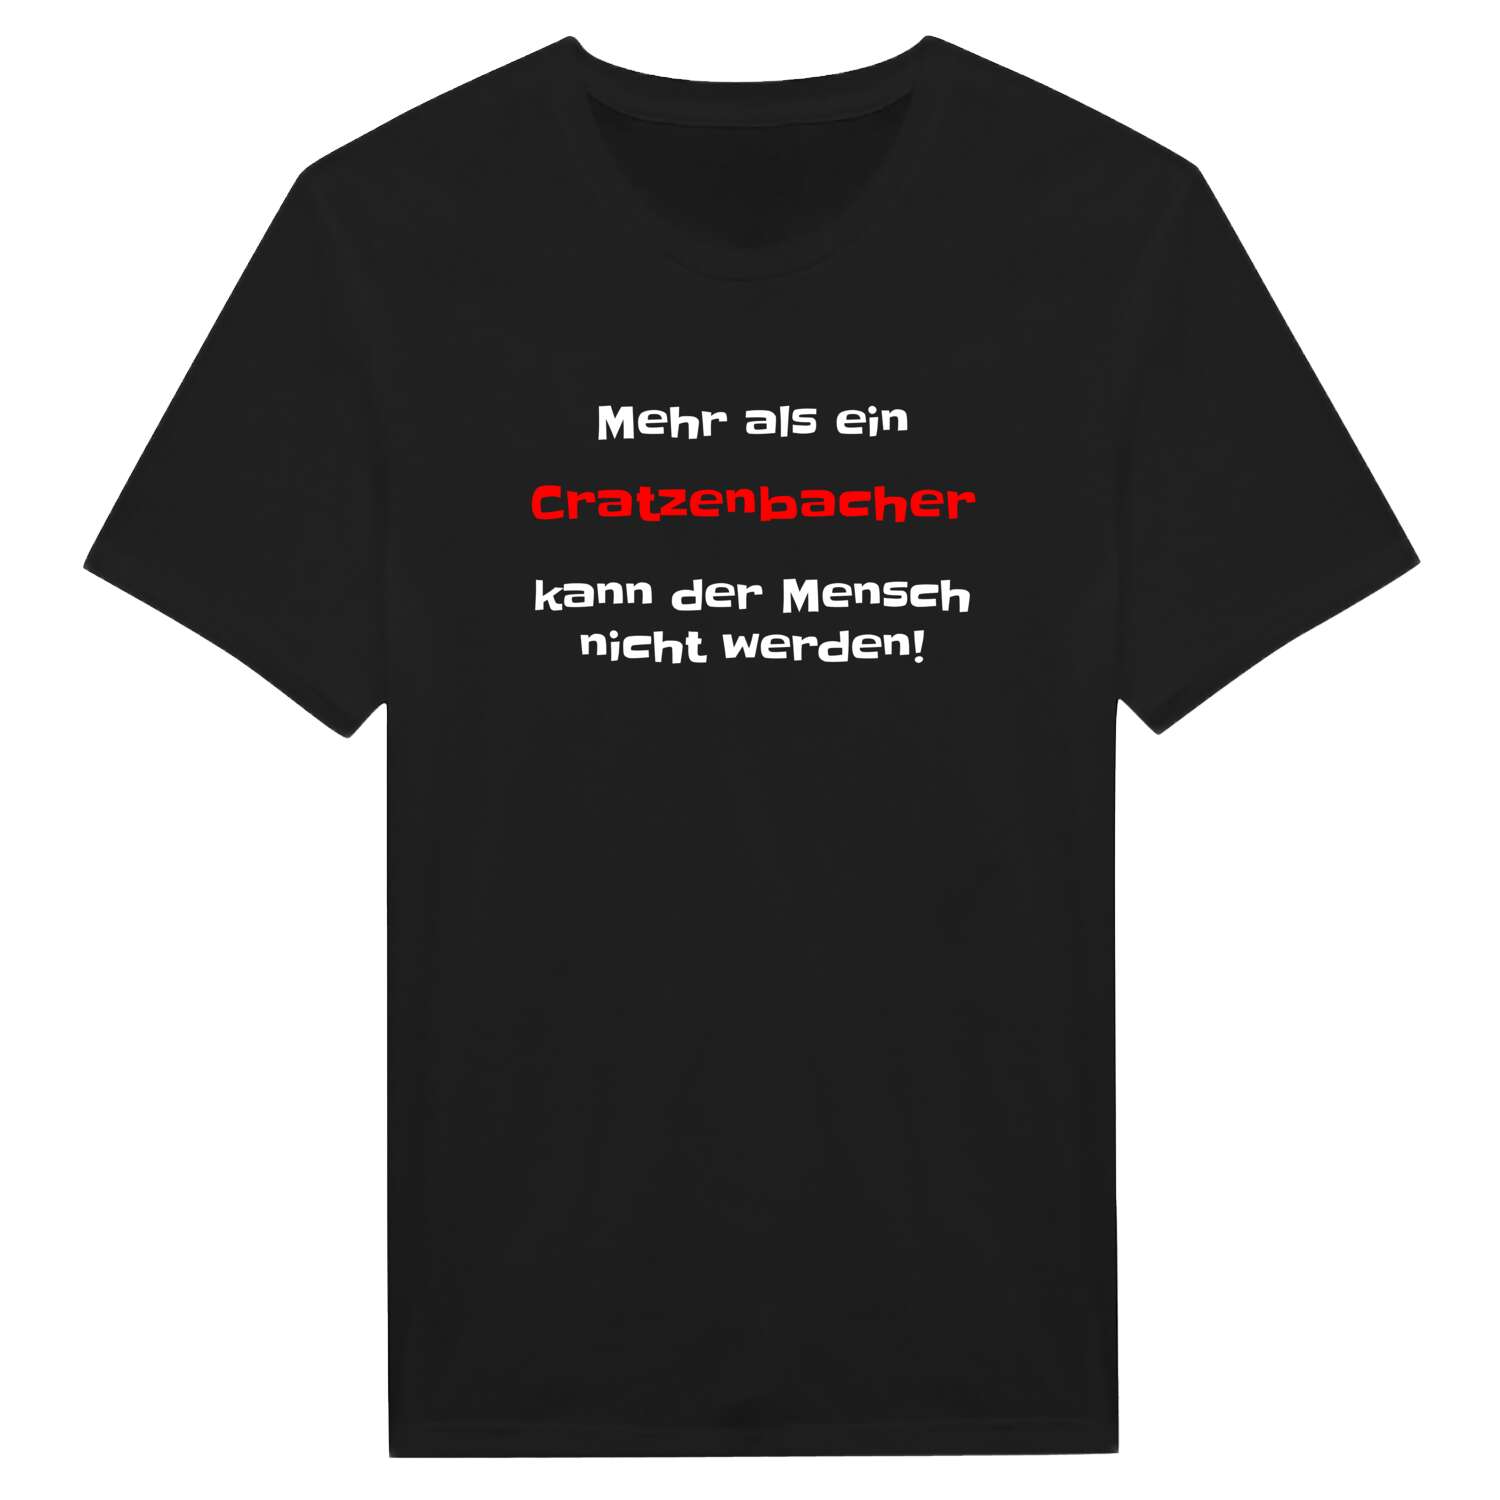 Cratzenbach T-Shirt »Mehr als ein«